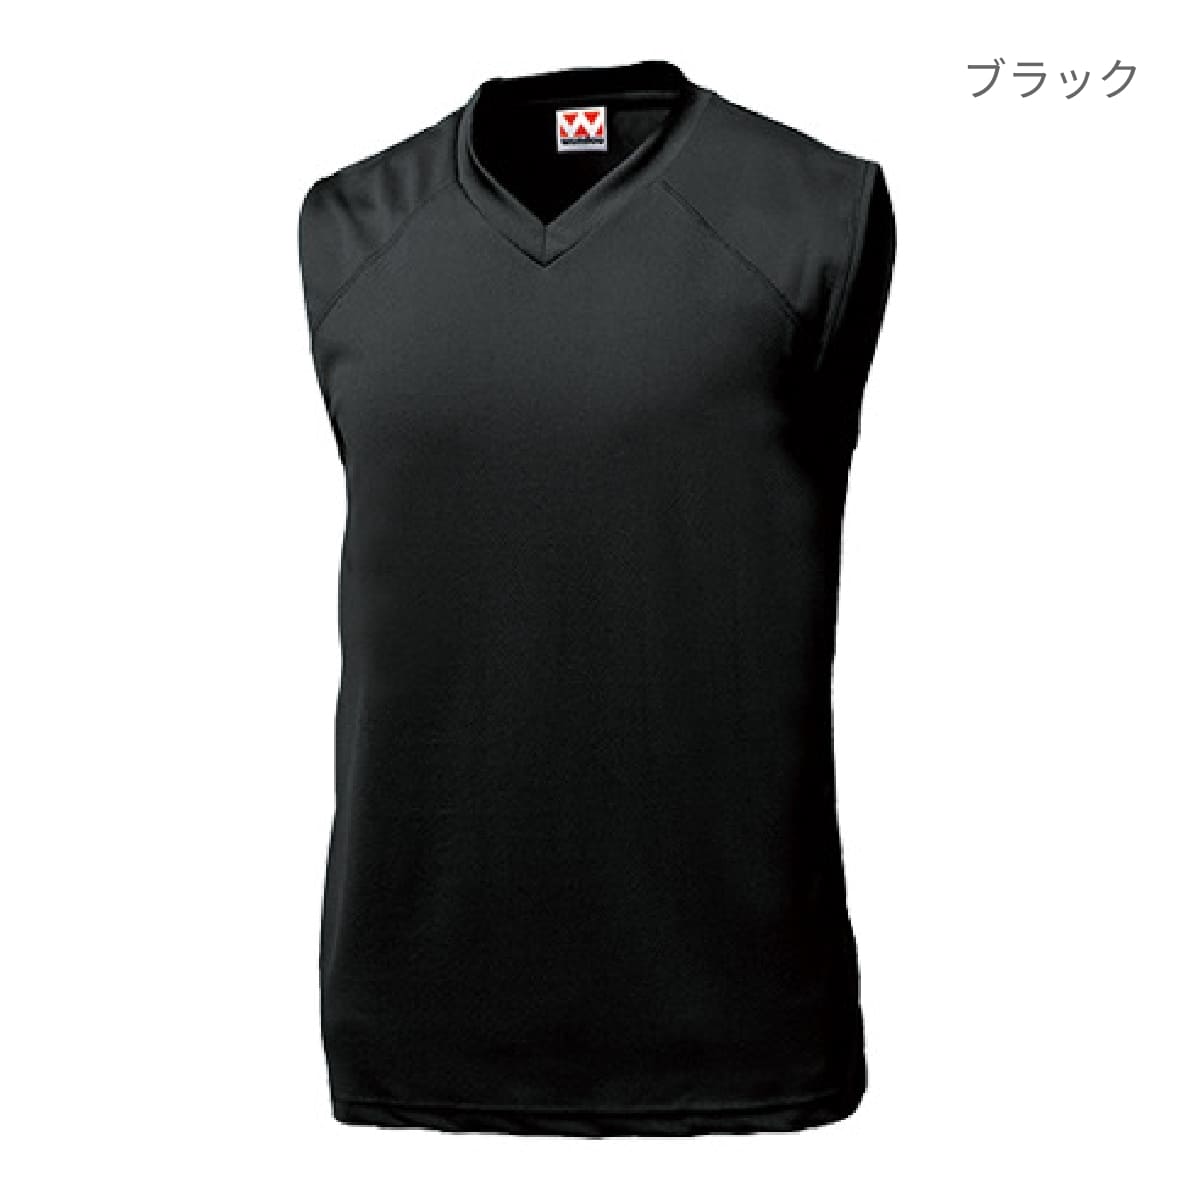 【送料無料】ベーシックバスケットシャツ | ユニフォーム | 1枚 | P1810 | ロイヤルブルー